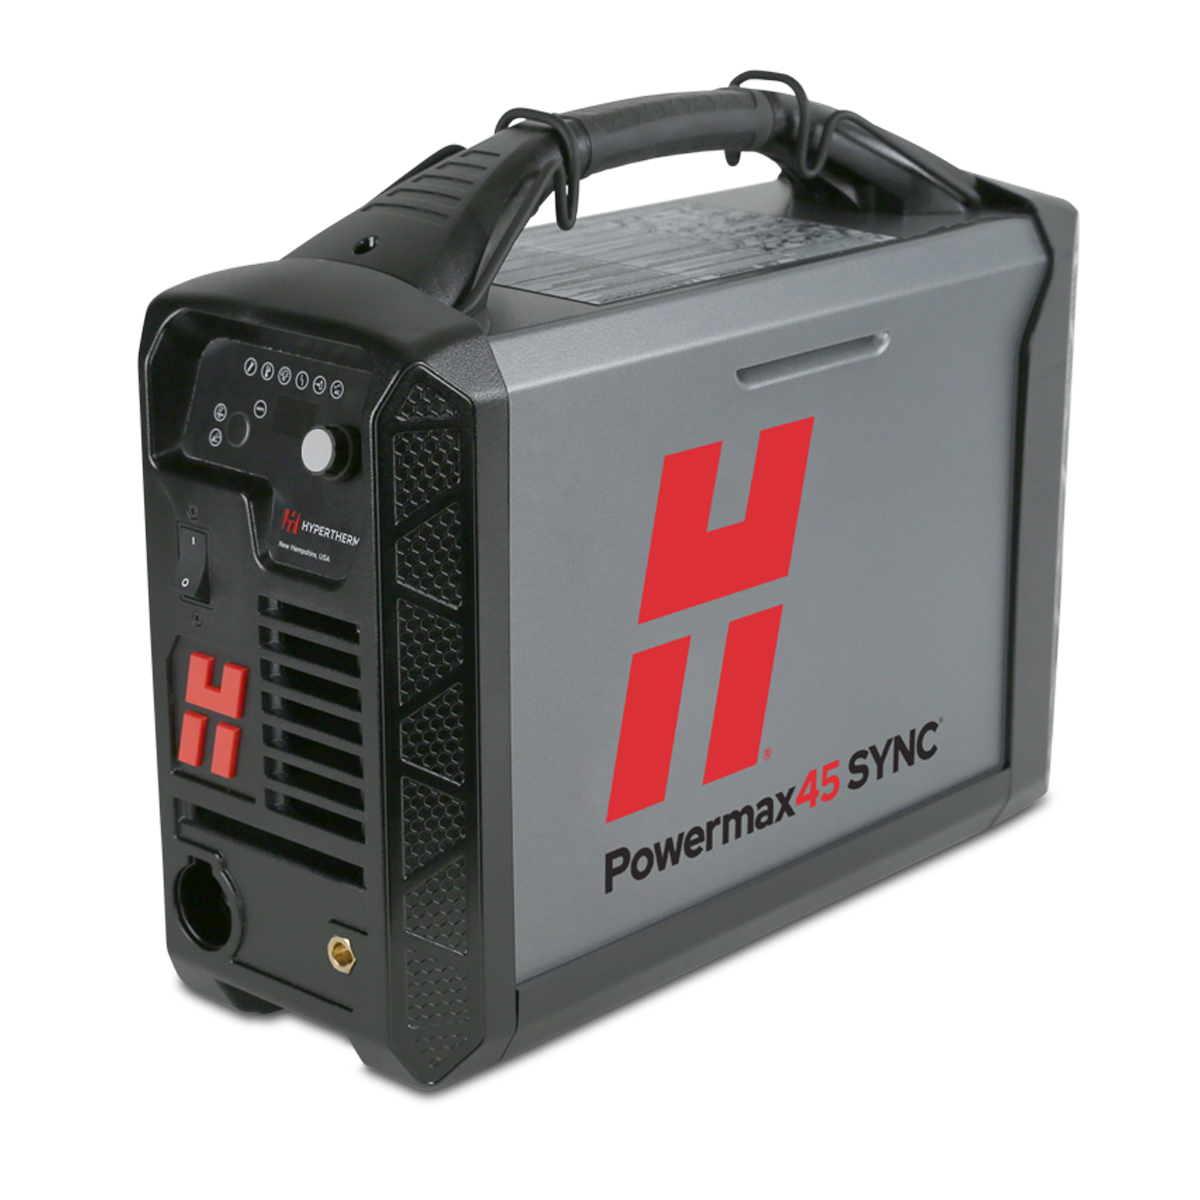 Powermax45 SYNC Power Supply w/ CPC & Serial Port (200-240V) #88572